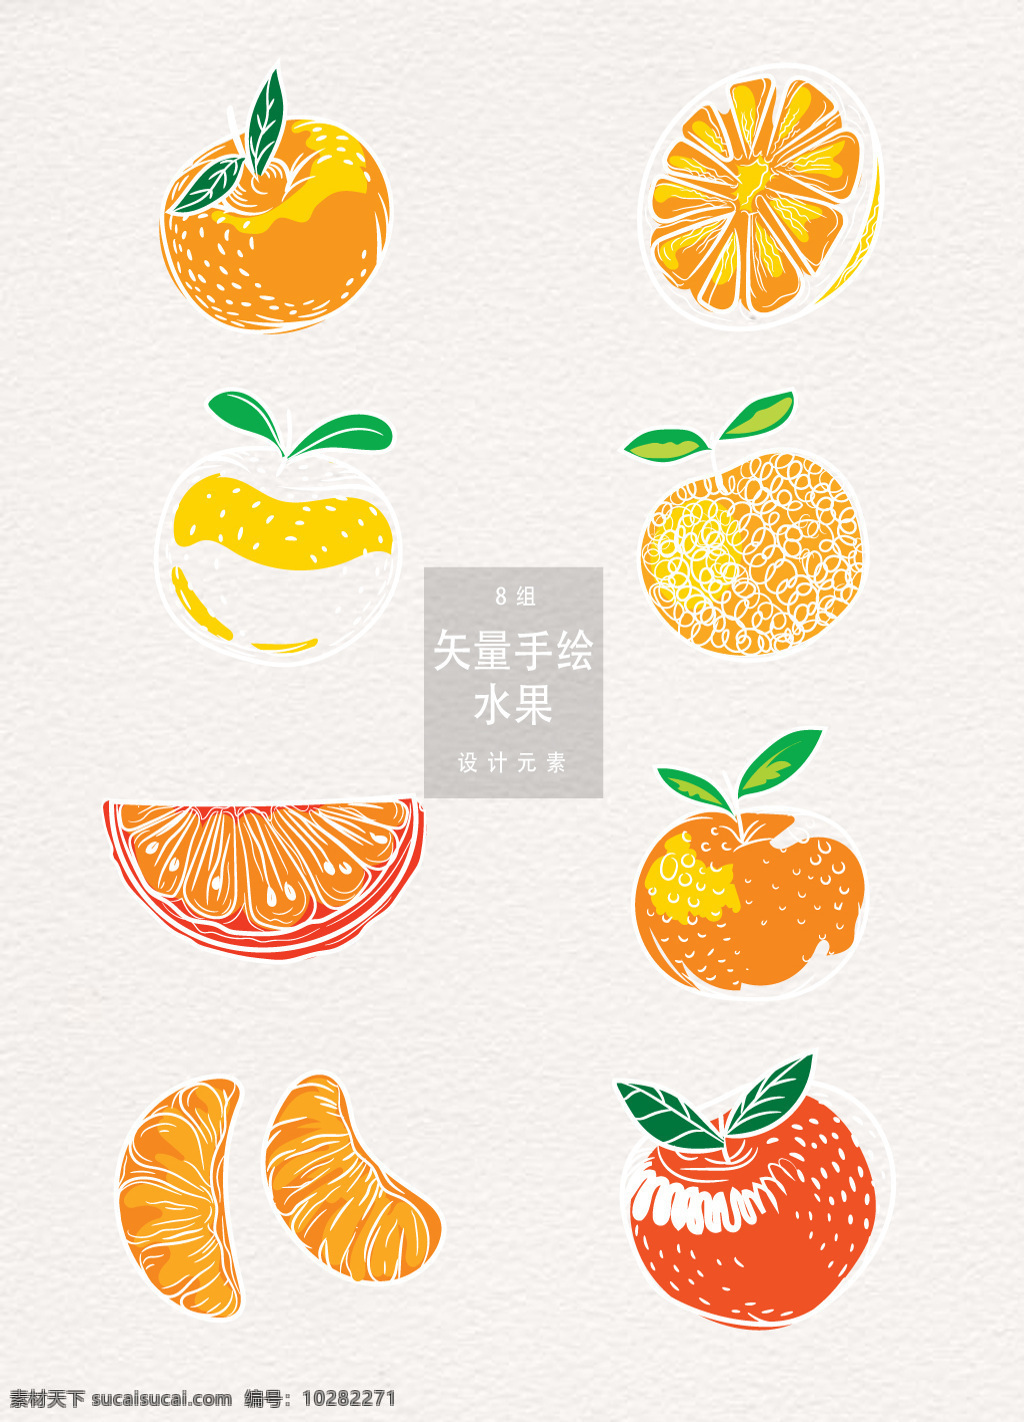 创意 手绘 橙子 元素 夏季 食物 植物 夏天 水果 手绘水果 手绘橙子